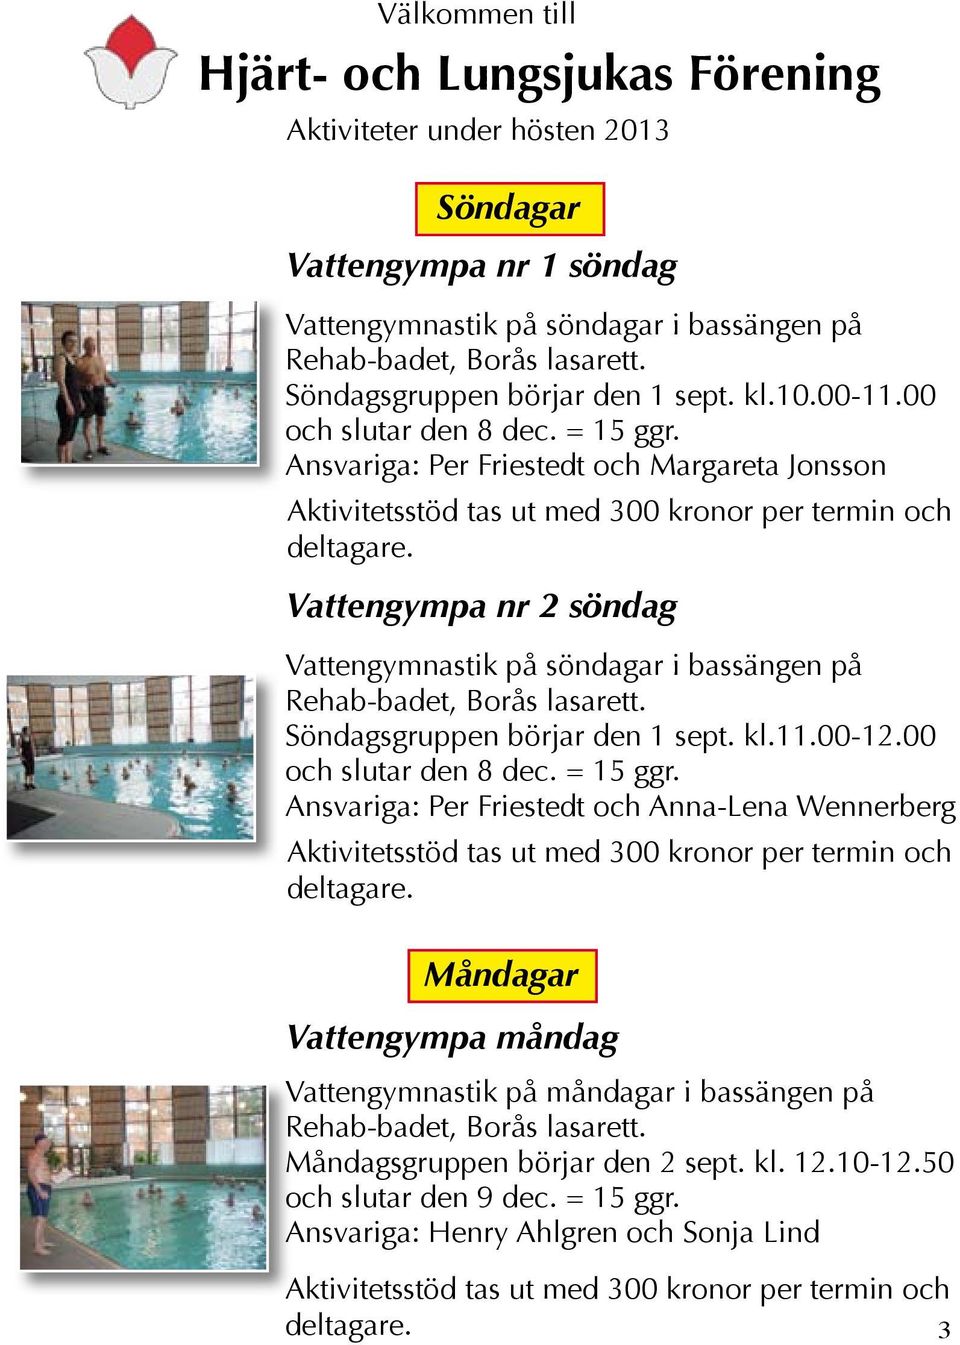 Vattengympa nr 2 söndag Vattengymnastik på söndagar i bassängen på Rehab-badet, Borås lasarett. Söndagsgruppen börjar den 1 sept. kl.11.00-12.00 och slutar den 8 dec. = 15 ggr.